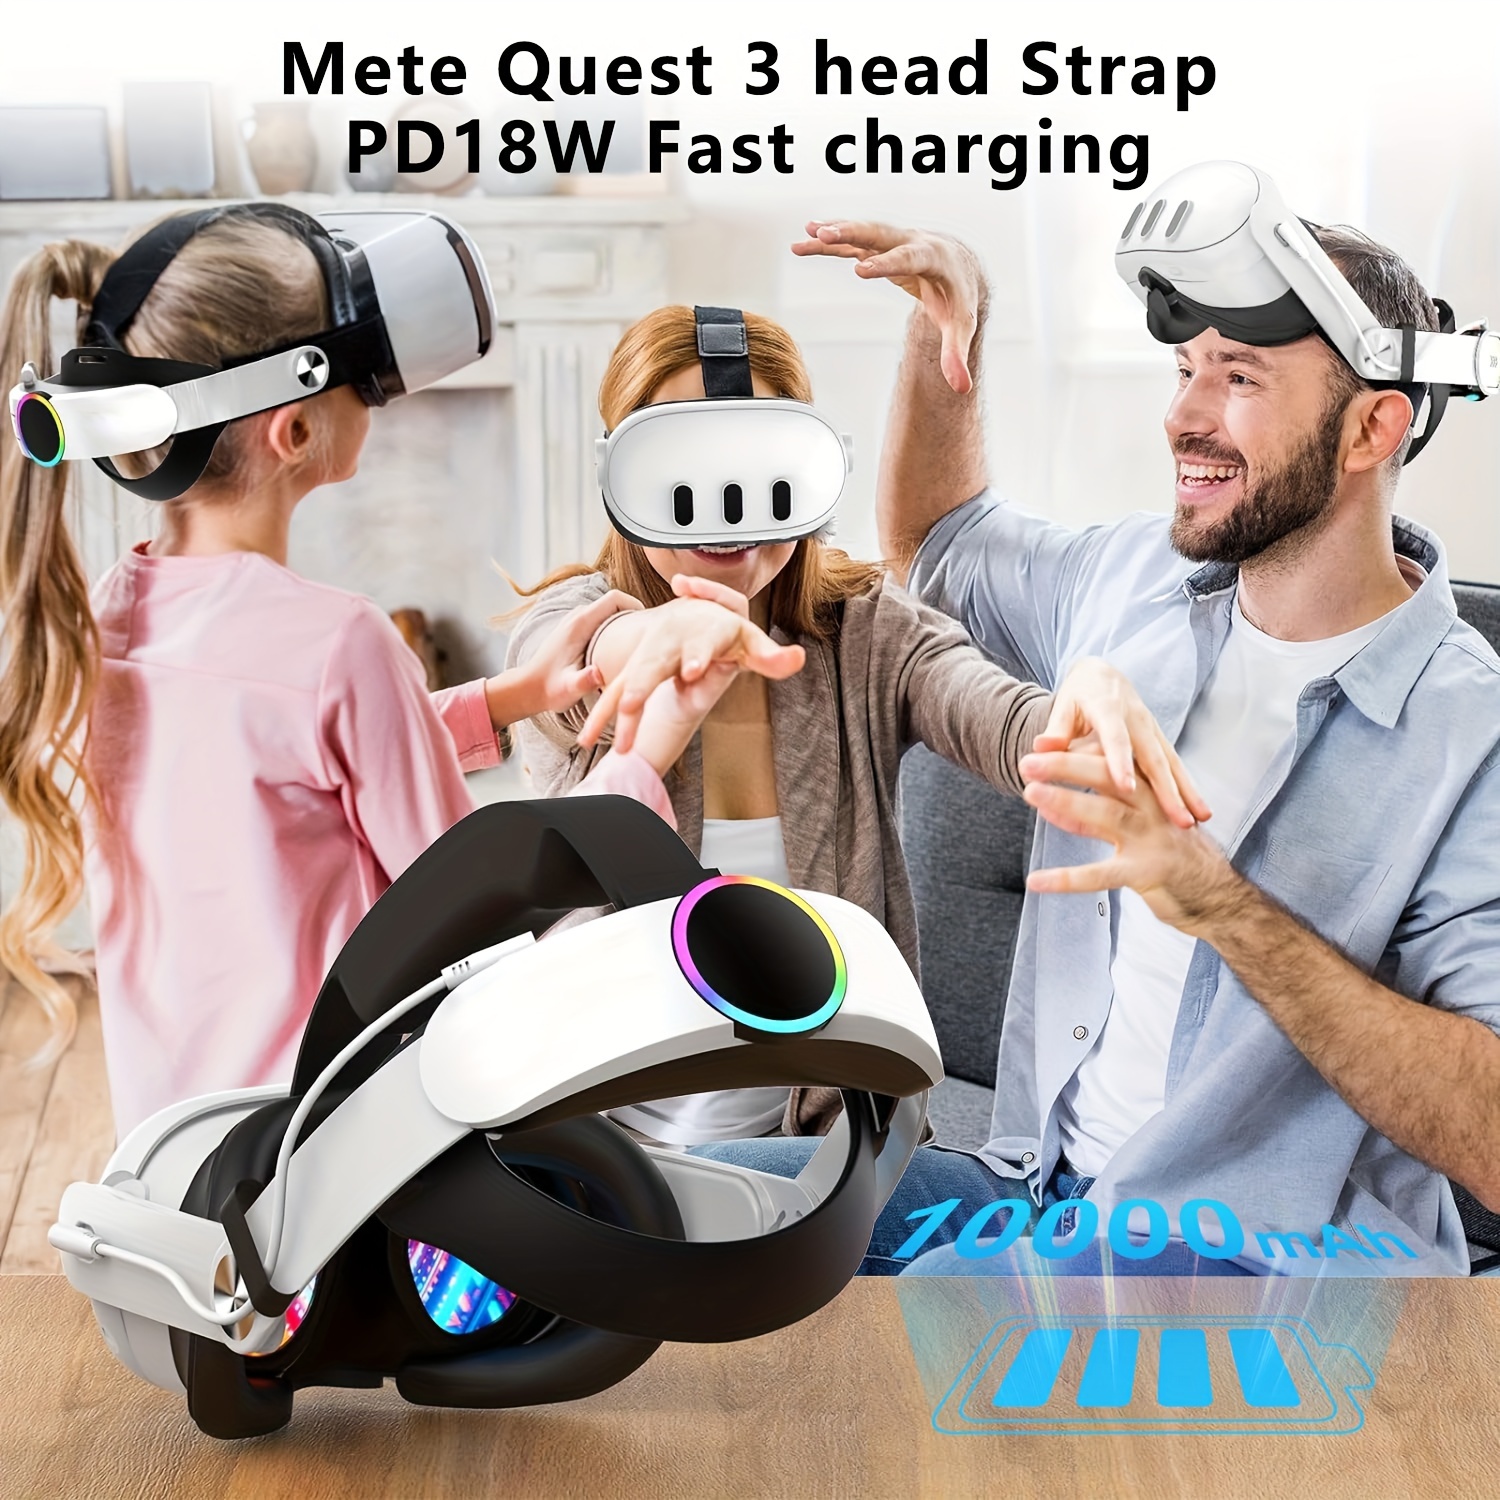 Funda rígida de transporte para Meta Quest 3, accesorio compatible con Meta  Quest 3 con diadema ELITE, controlador táctil y otros accesorios, diseño